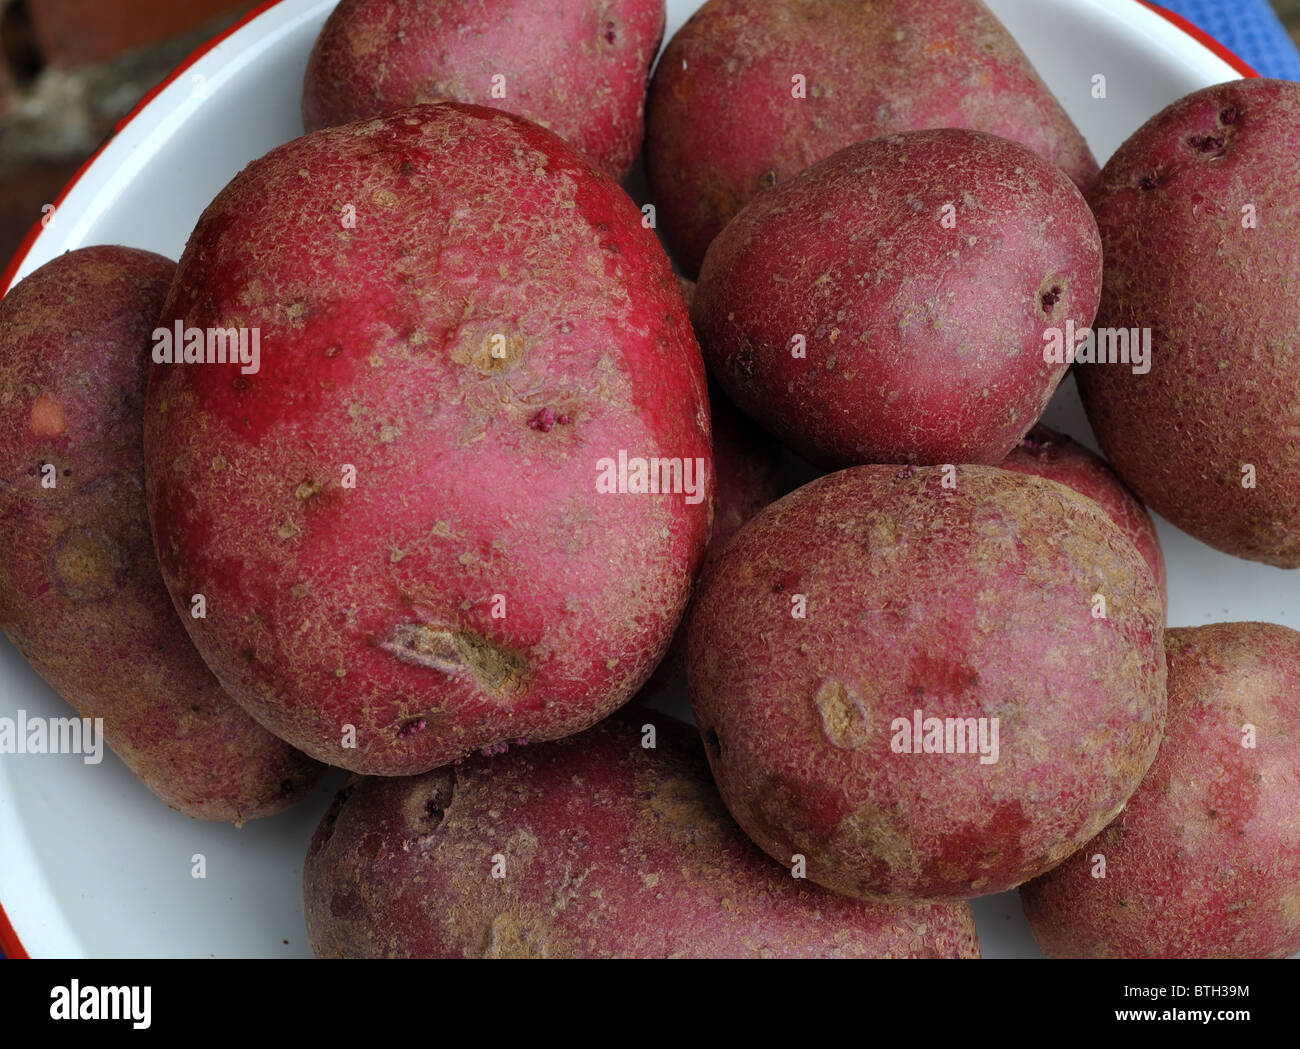 Red Duke of York potatoes Stock Photo